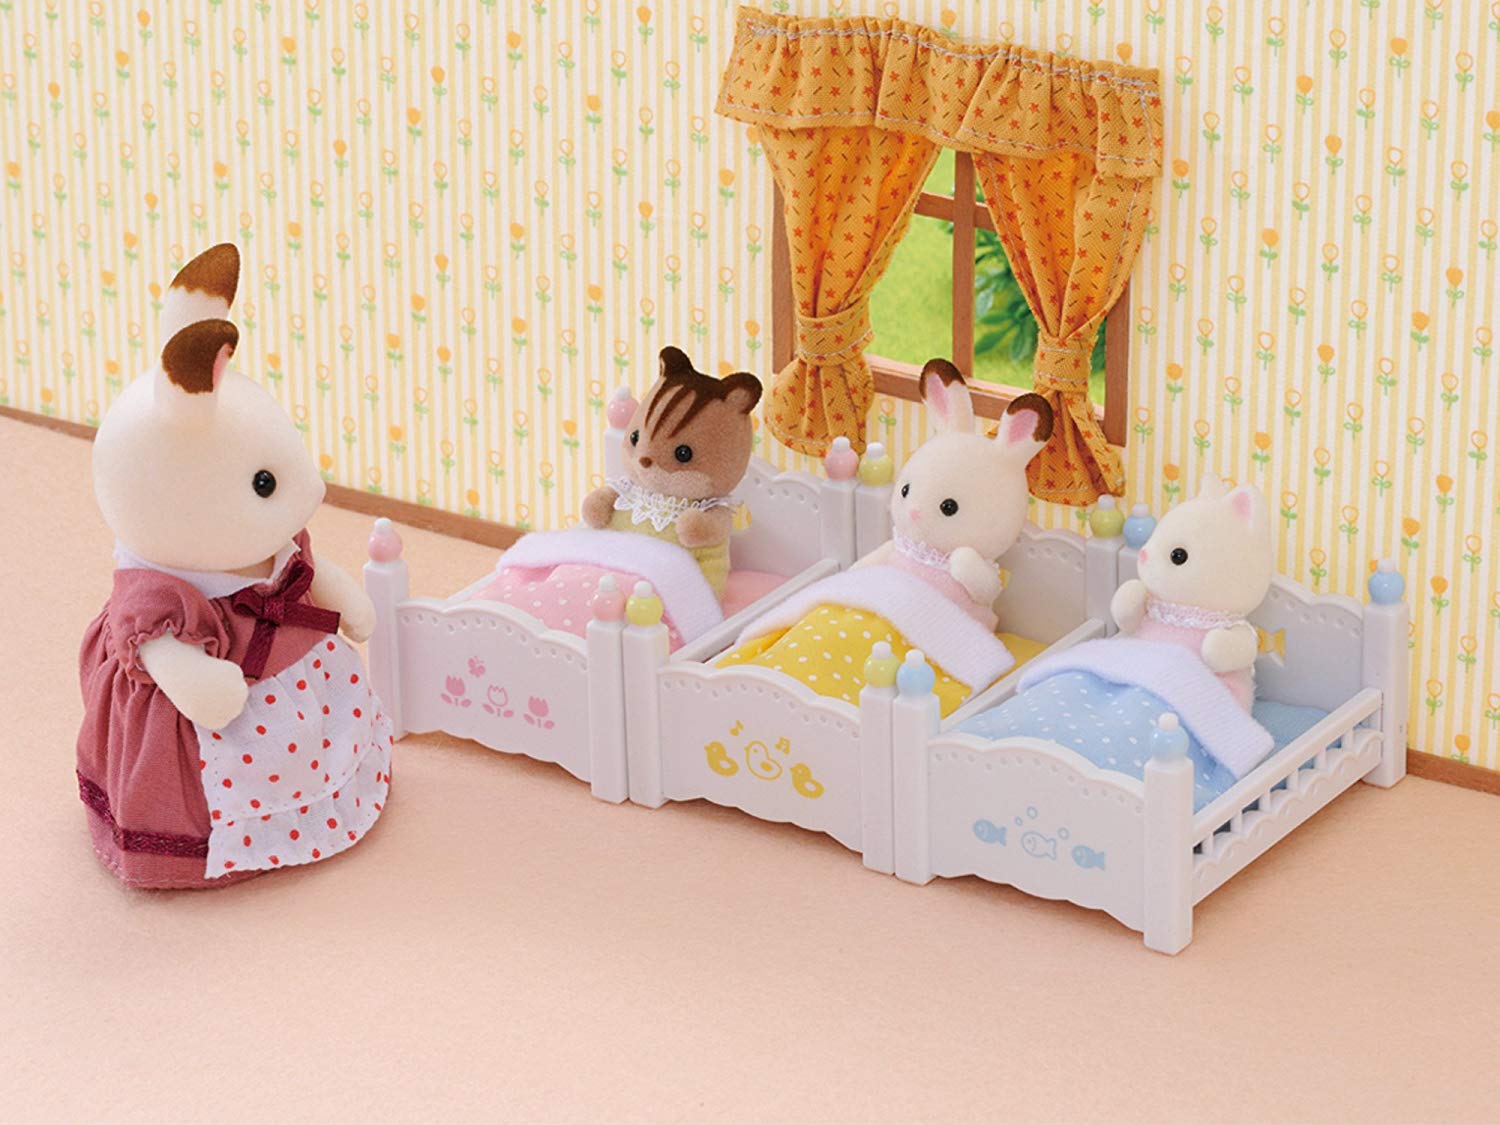 Sylvanian- Triple Bunk Beds Families Lits Superposés à 3 Couchettes Bébés-Poupées et Accessoires, 4448, Multicolore